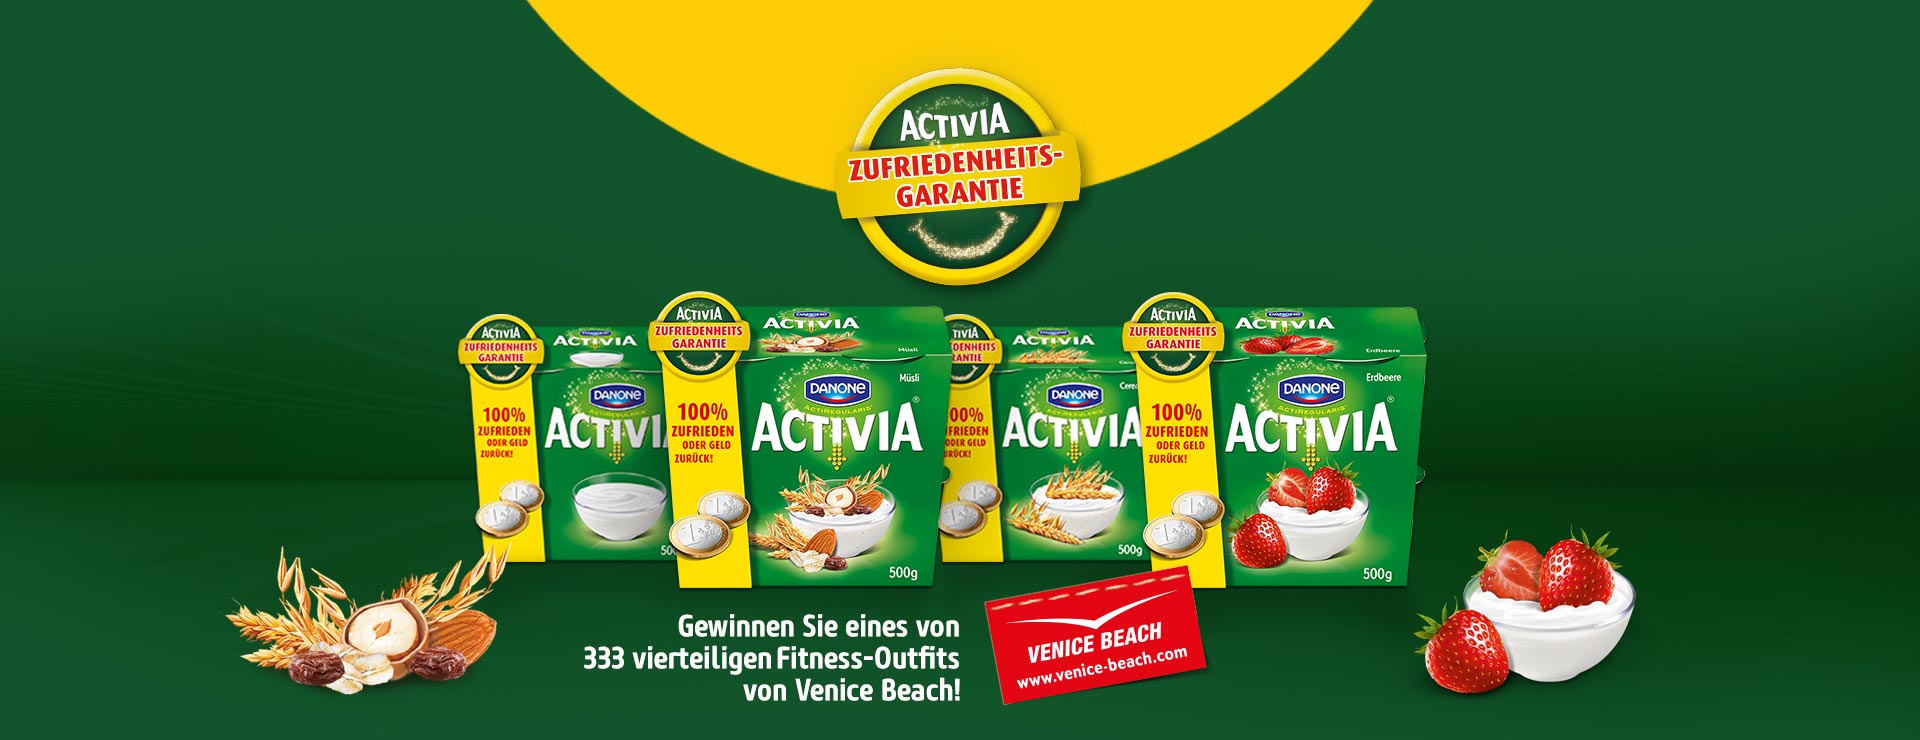 Activia-Joghurt